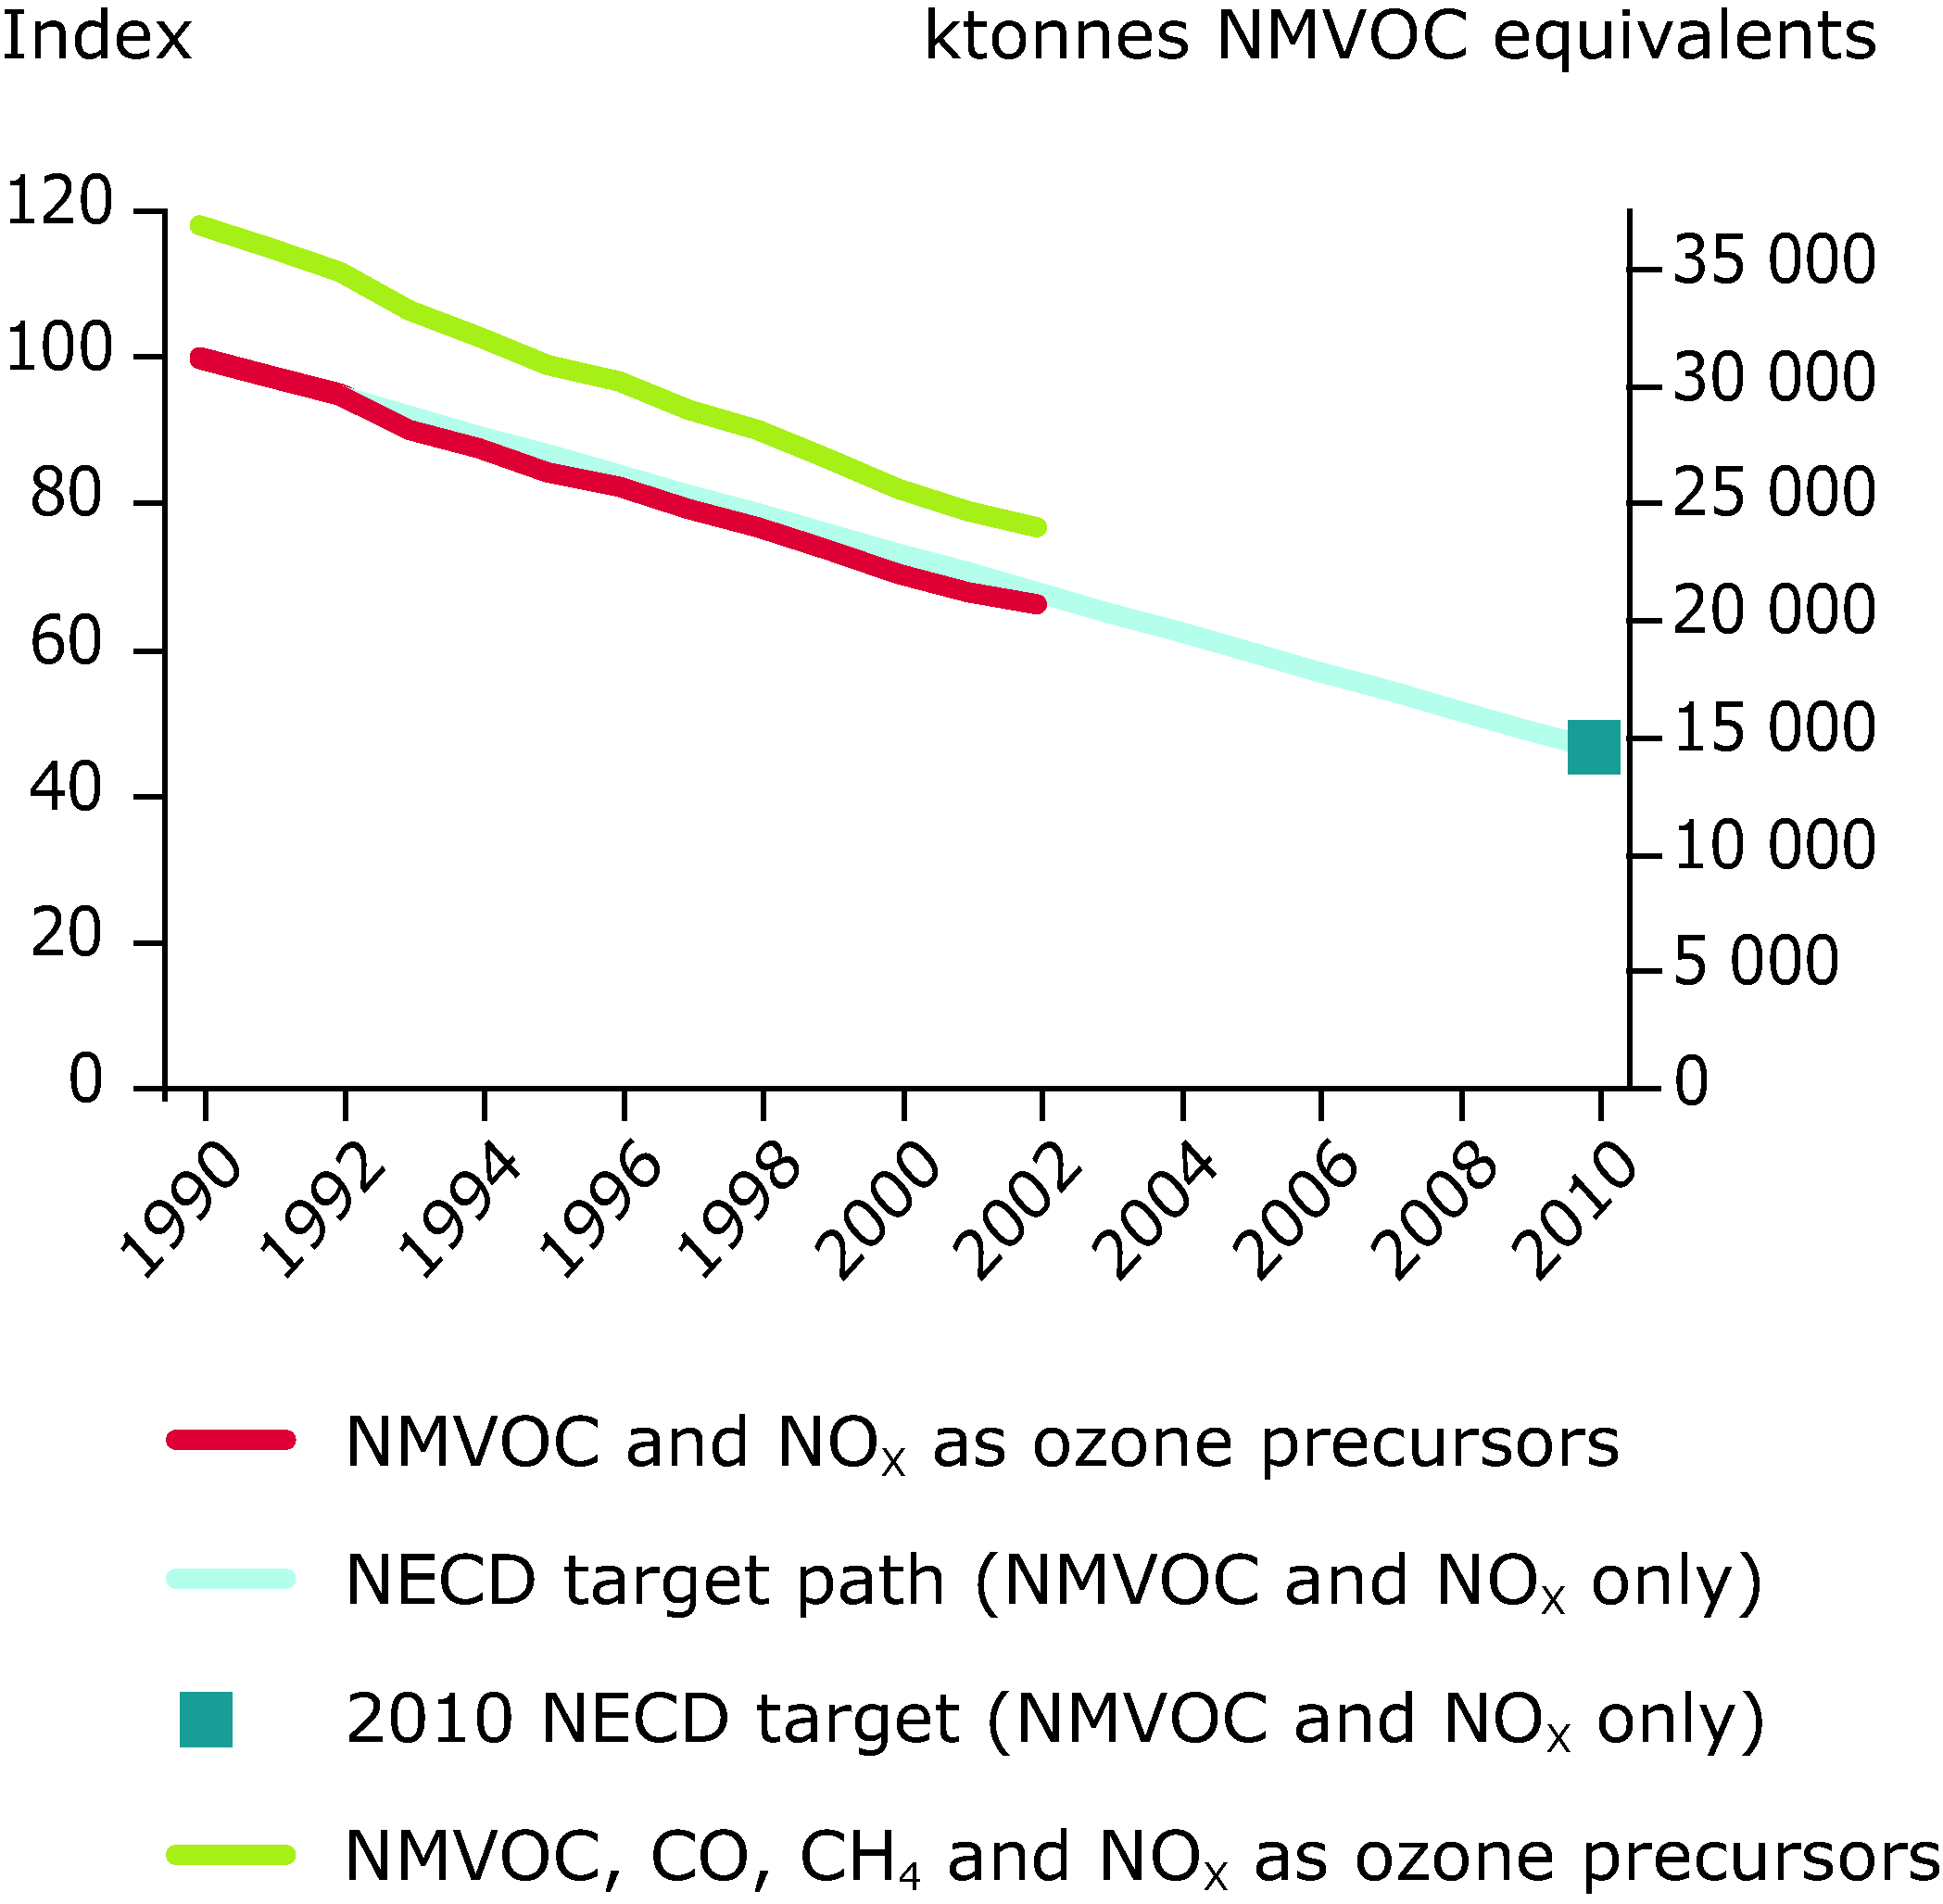 Emission trends of ozone precursors (ktonnes NMVOC-equivalent) for EU-15, 1990-2002